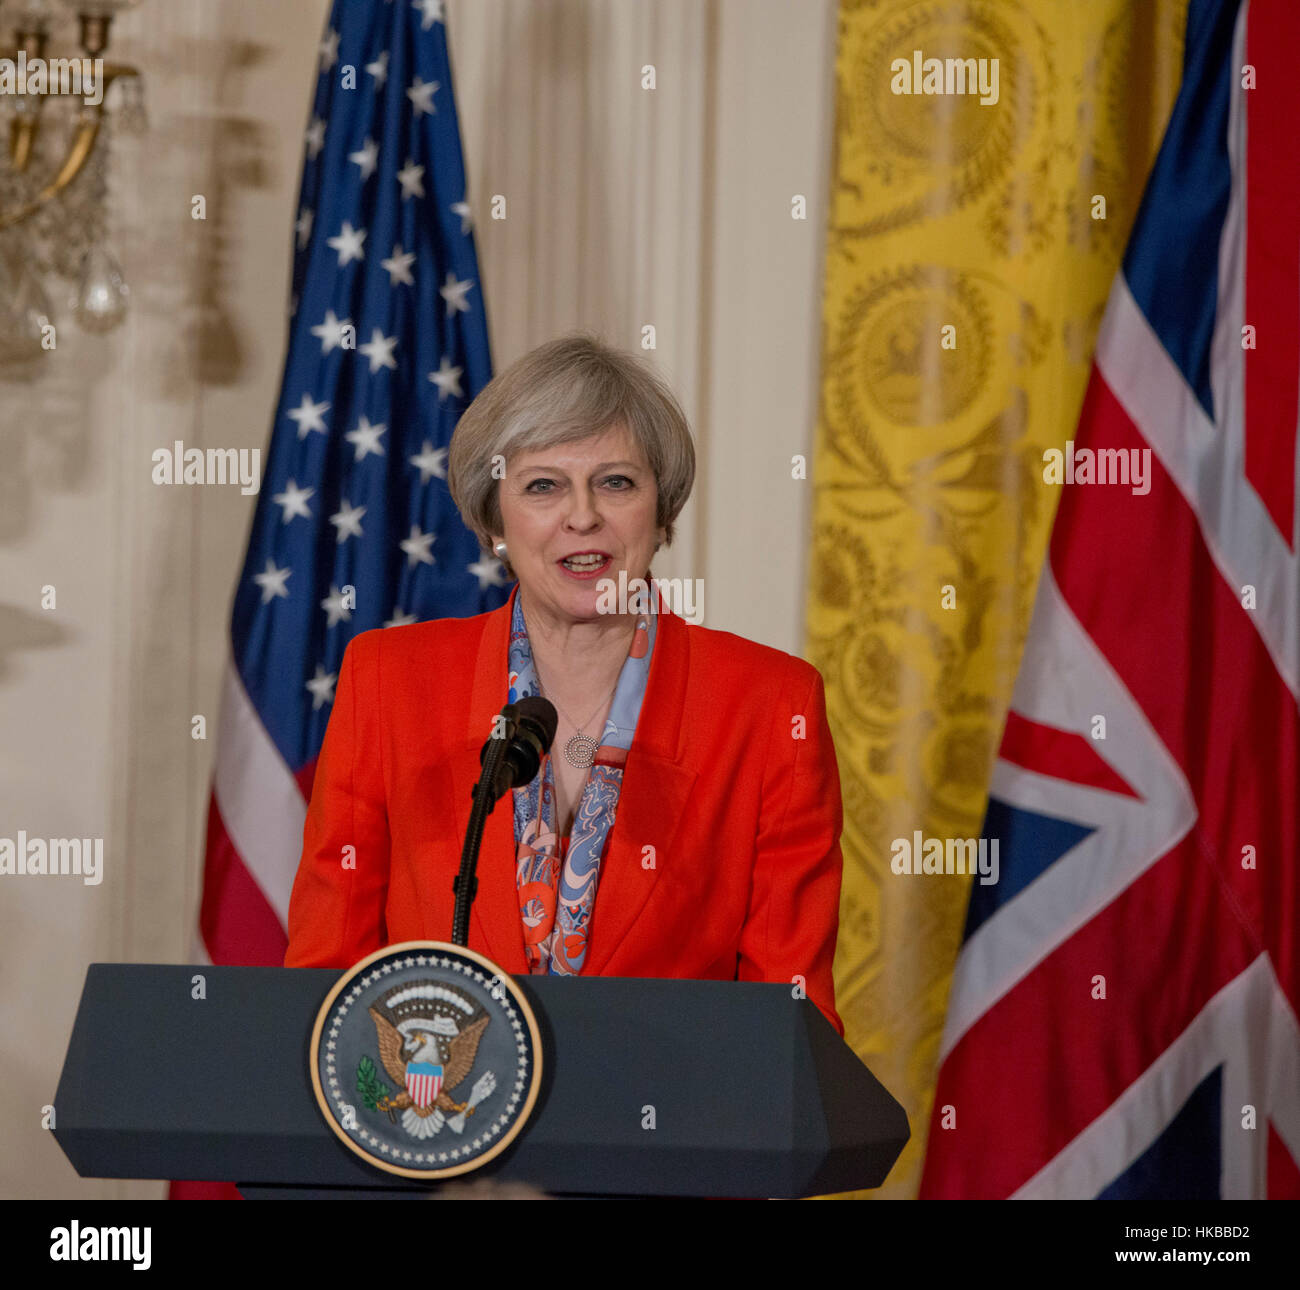 Washington, DC, 27. Januar 2017, USA: Präsident Donald J. Trump, begrüßt Premierminister des Vereinigten Königreichs, Theresa May ins Weiße Haus. Dies ist Mays Antrittsbesuch im Weißen Haus als Premierminister Großbritanniens. Patsy Lynch/MediaPunch Stockfoto